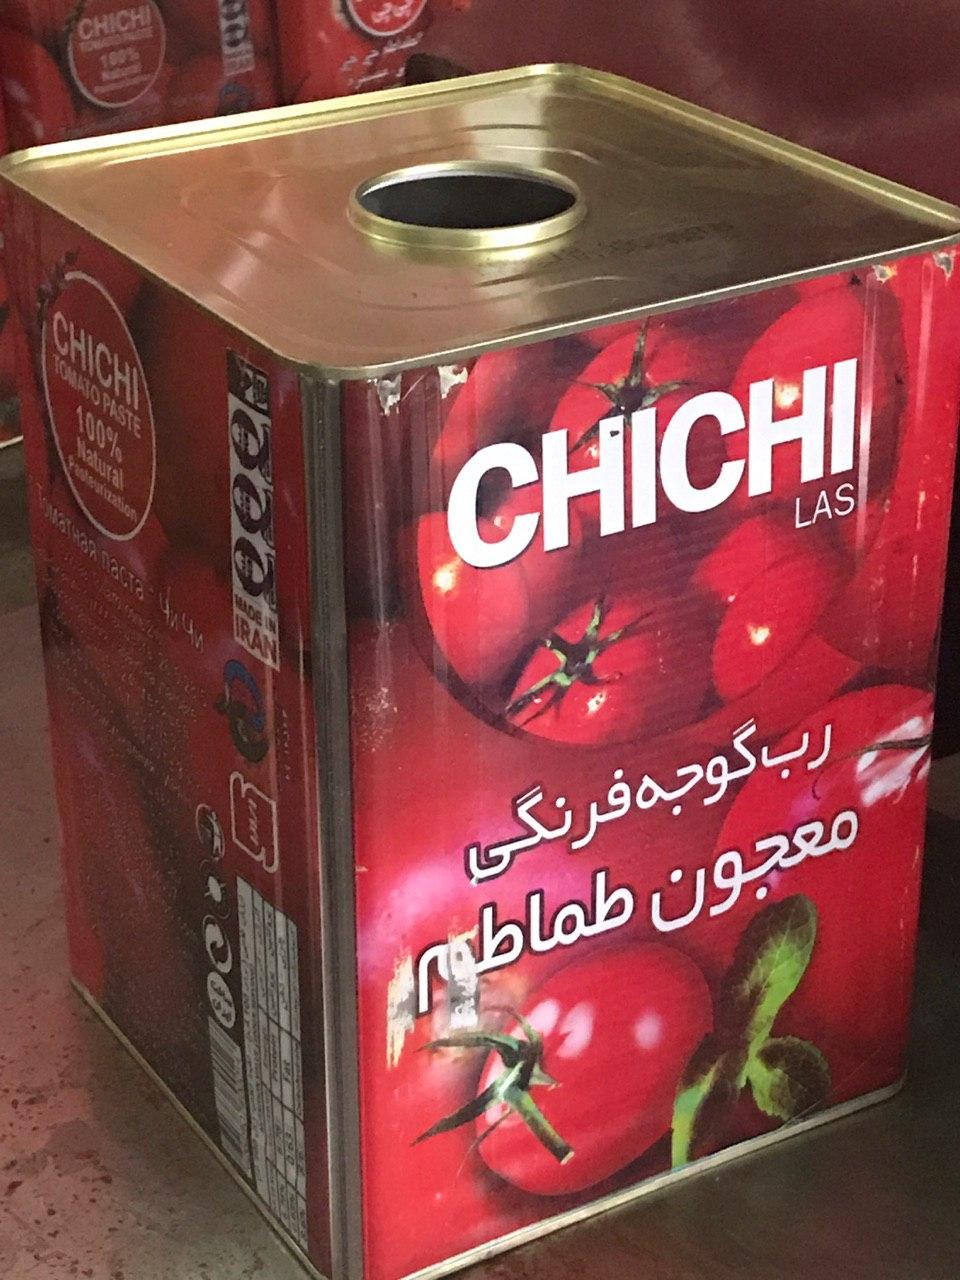 تولید کننده رب گوجه فرنگی حلبی چی چی لاس